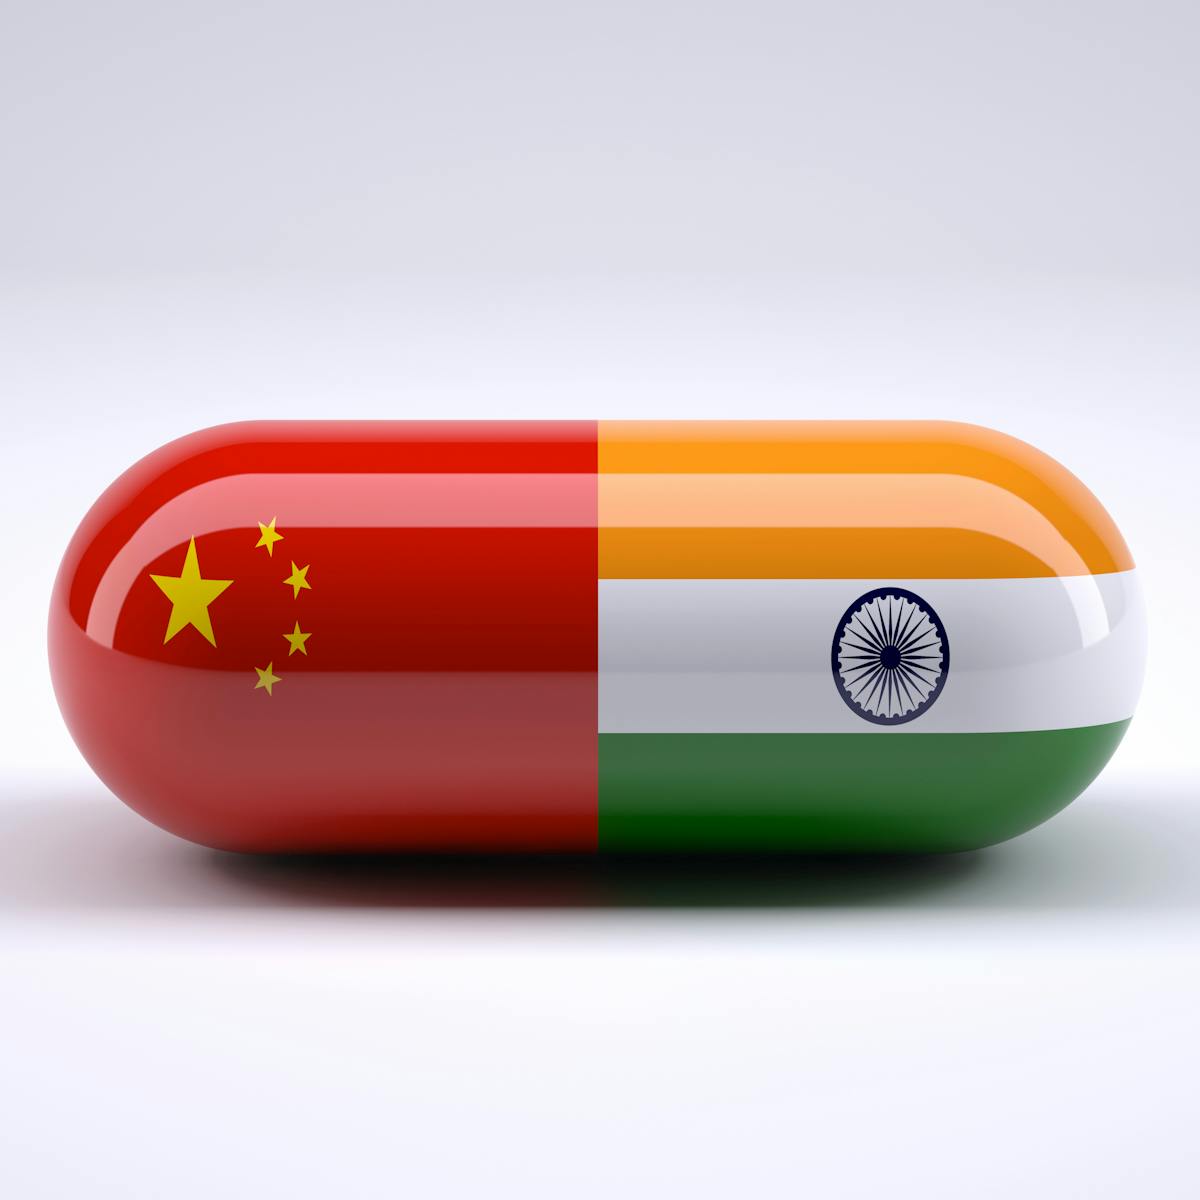 The world needs pharmaceuticals from China and India to beat coronavirus